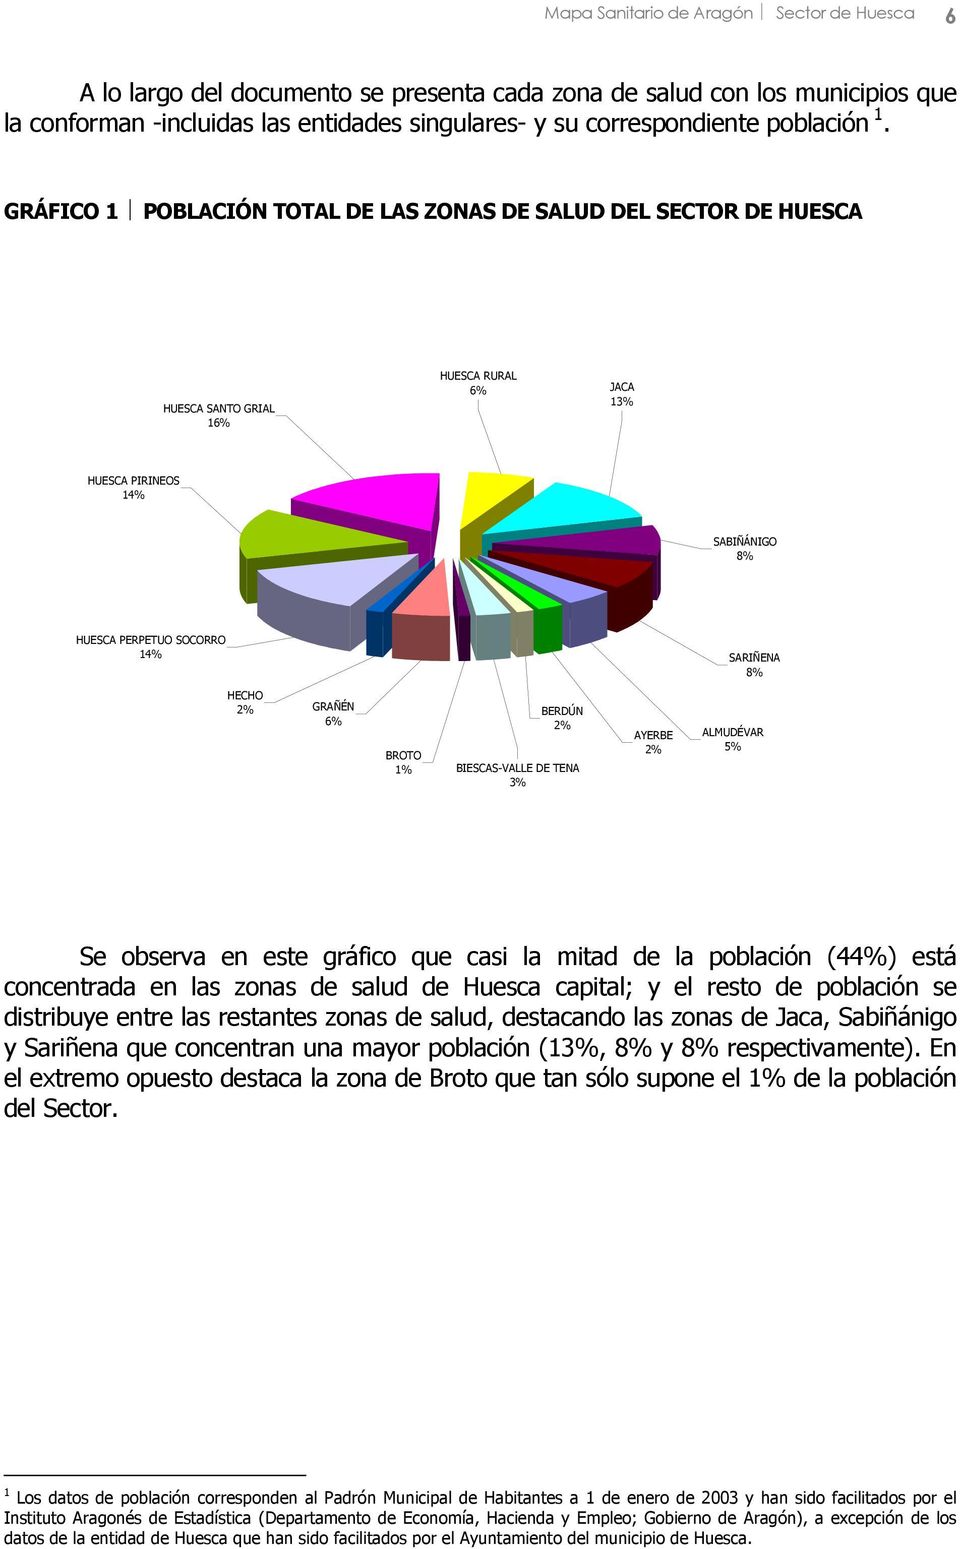 GRÁFICO 1 POBLACIÓN TOTAL DE LAS ZONAS DE SALUD DEL SECTOR DE HUESCA HUESCA SANTO GRIAL 16% HUESCA RURAL 6% JACA 13% HUESCA PIRINEOS 14% SABIÑÁNIGO 8% HUESCA PERPETUO SOCORRO 14% SARIÑENA 8% HECHO 2%